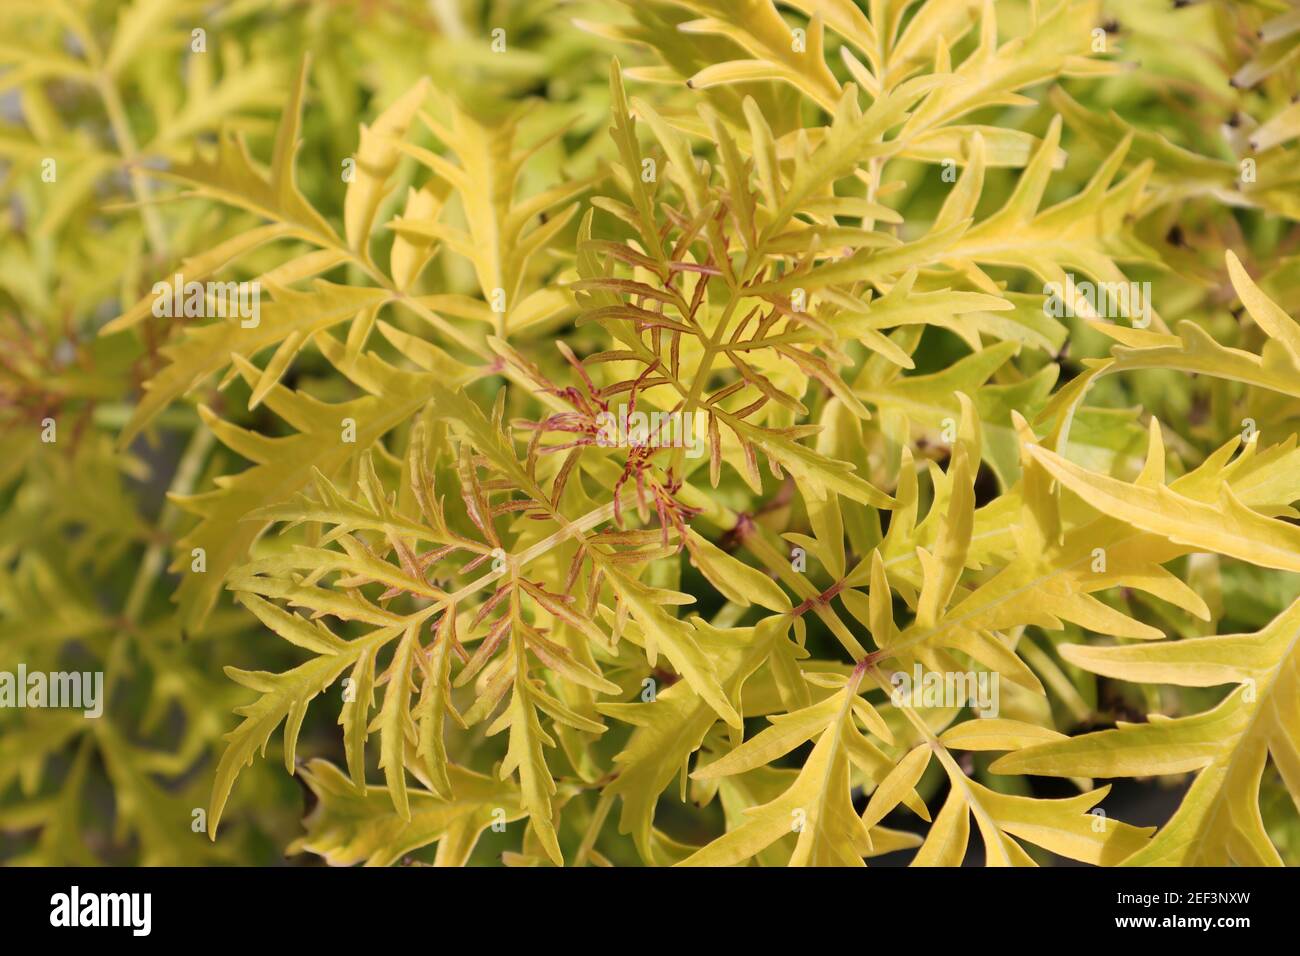 Background of golden lemon colored leaves on an elder shrub Stock Photo